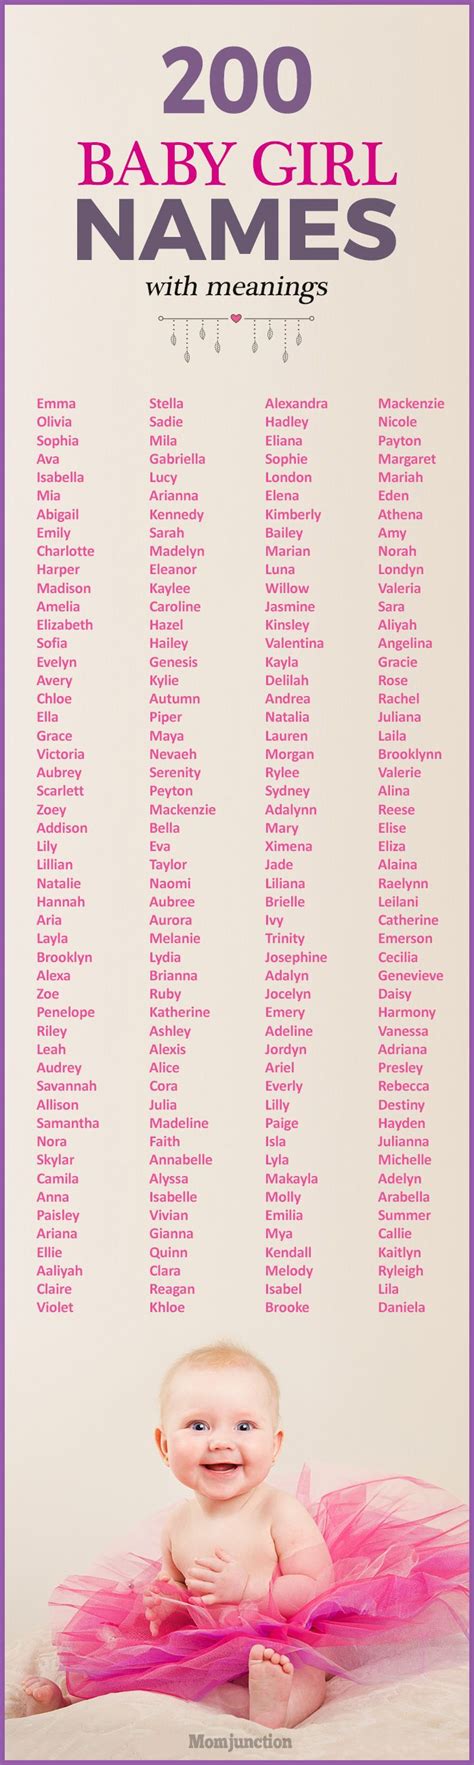 Best 25 Names For Girls Ideas On Pinterest Girl Character Names